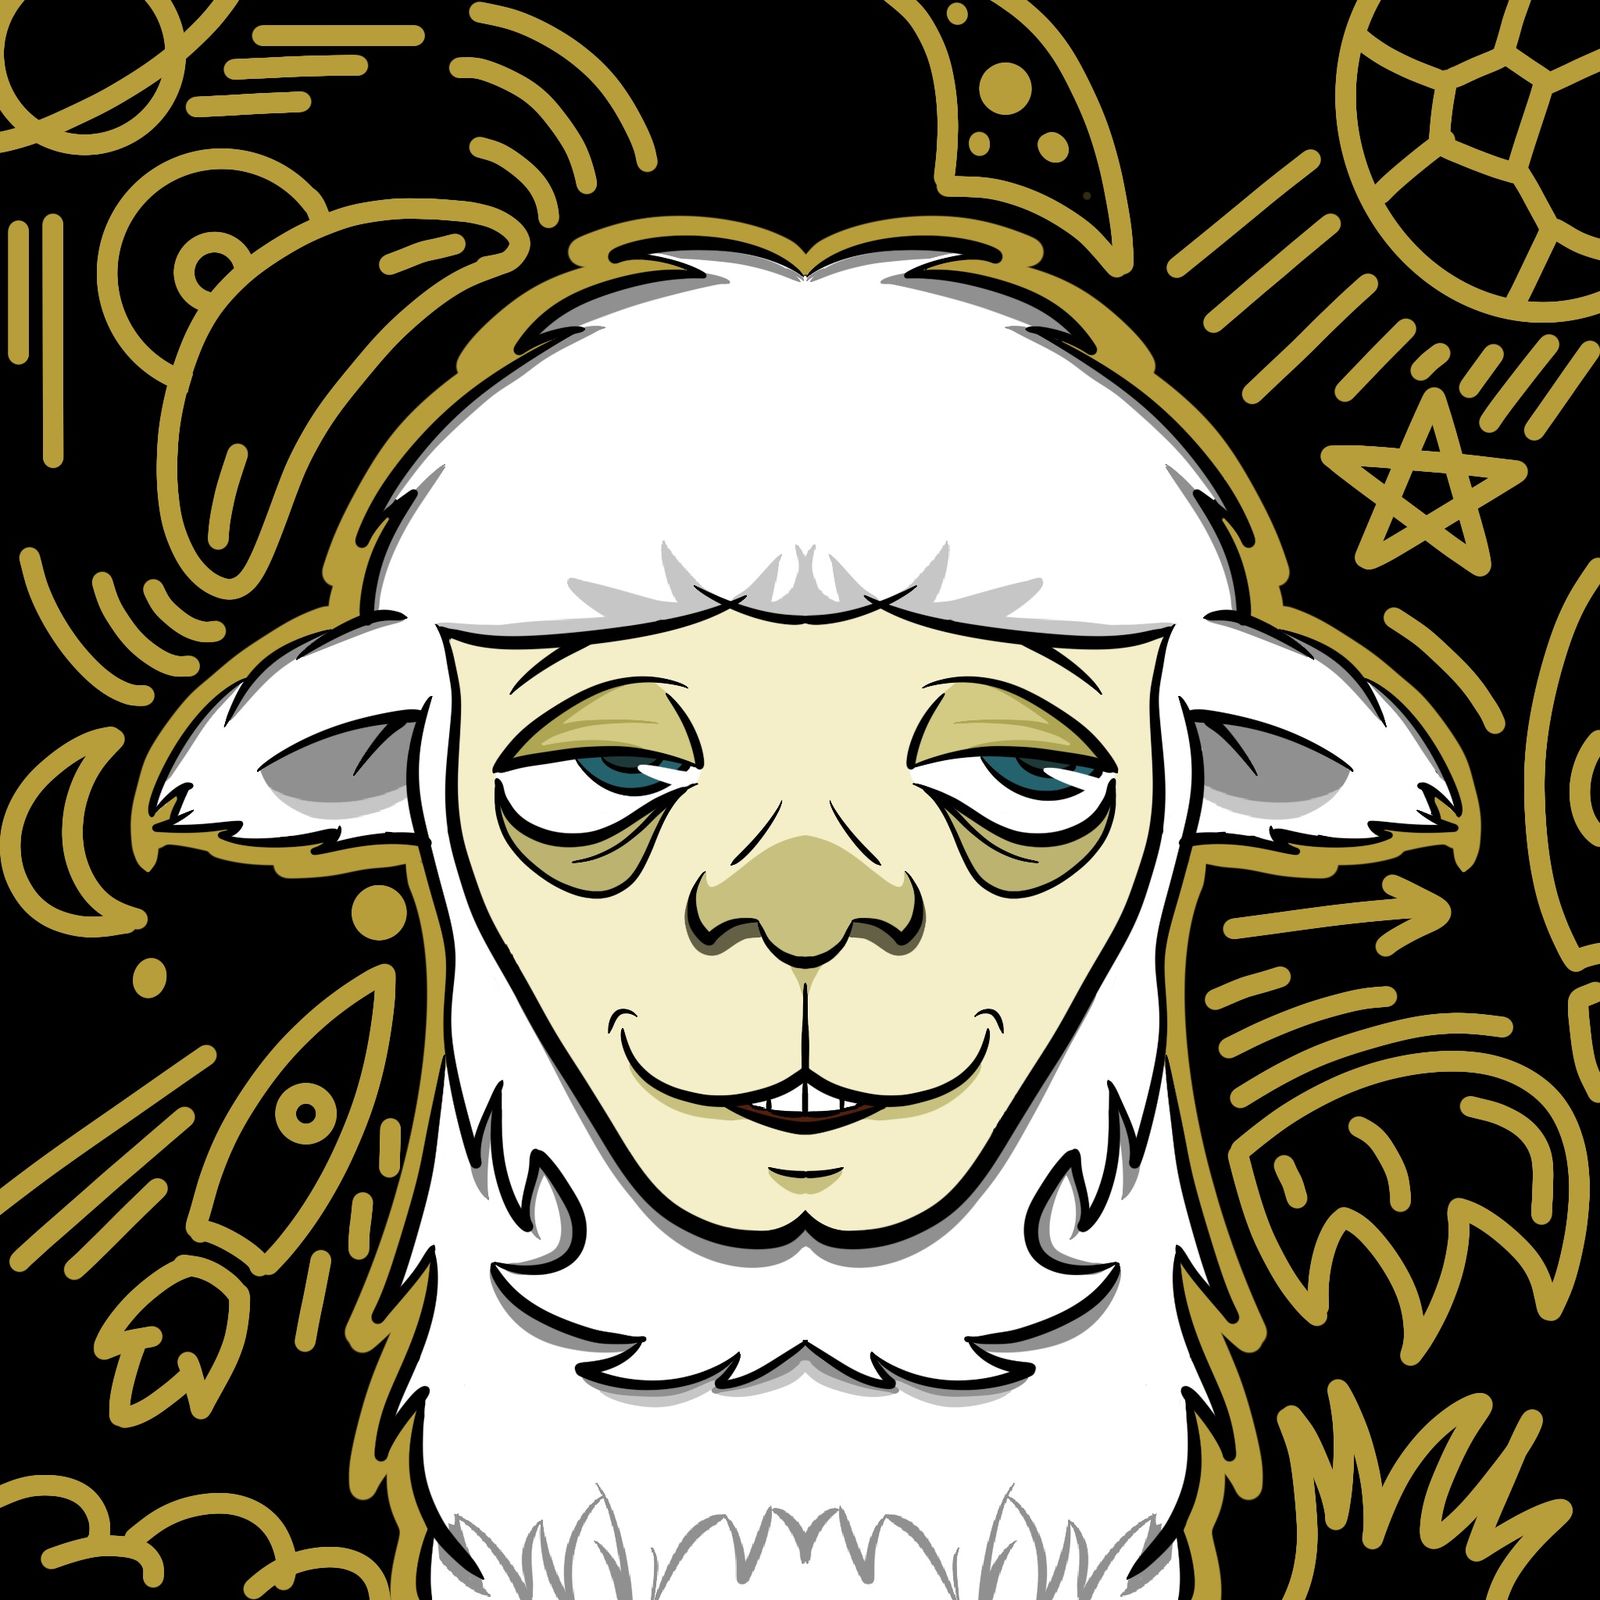 羊驼人物设计插画图片壁纸